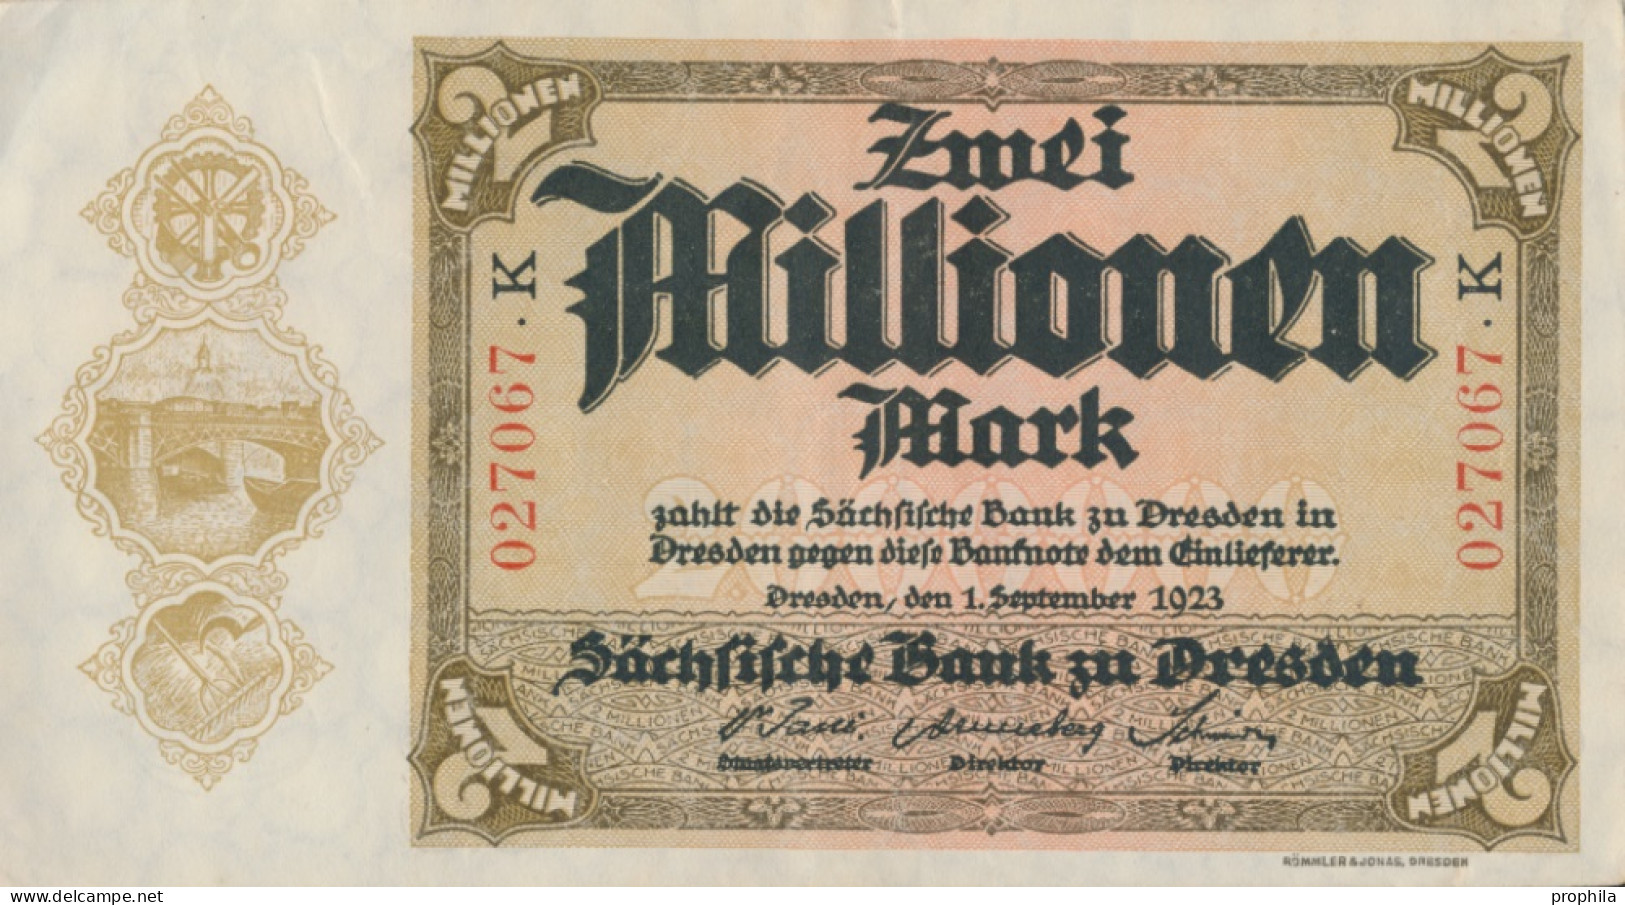 Sachsen Rosenbg: SAX20 Länderbanknote Sachsen Gebraucht (III) 1923 2 Mio. Mark (10288531 - 2 Mio. Mark